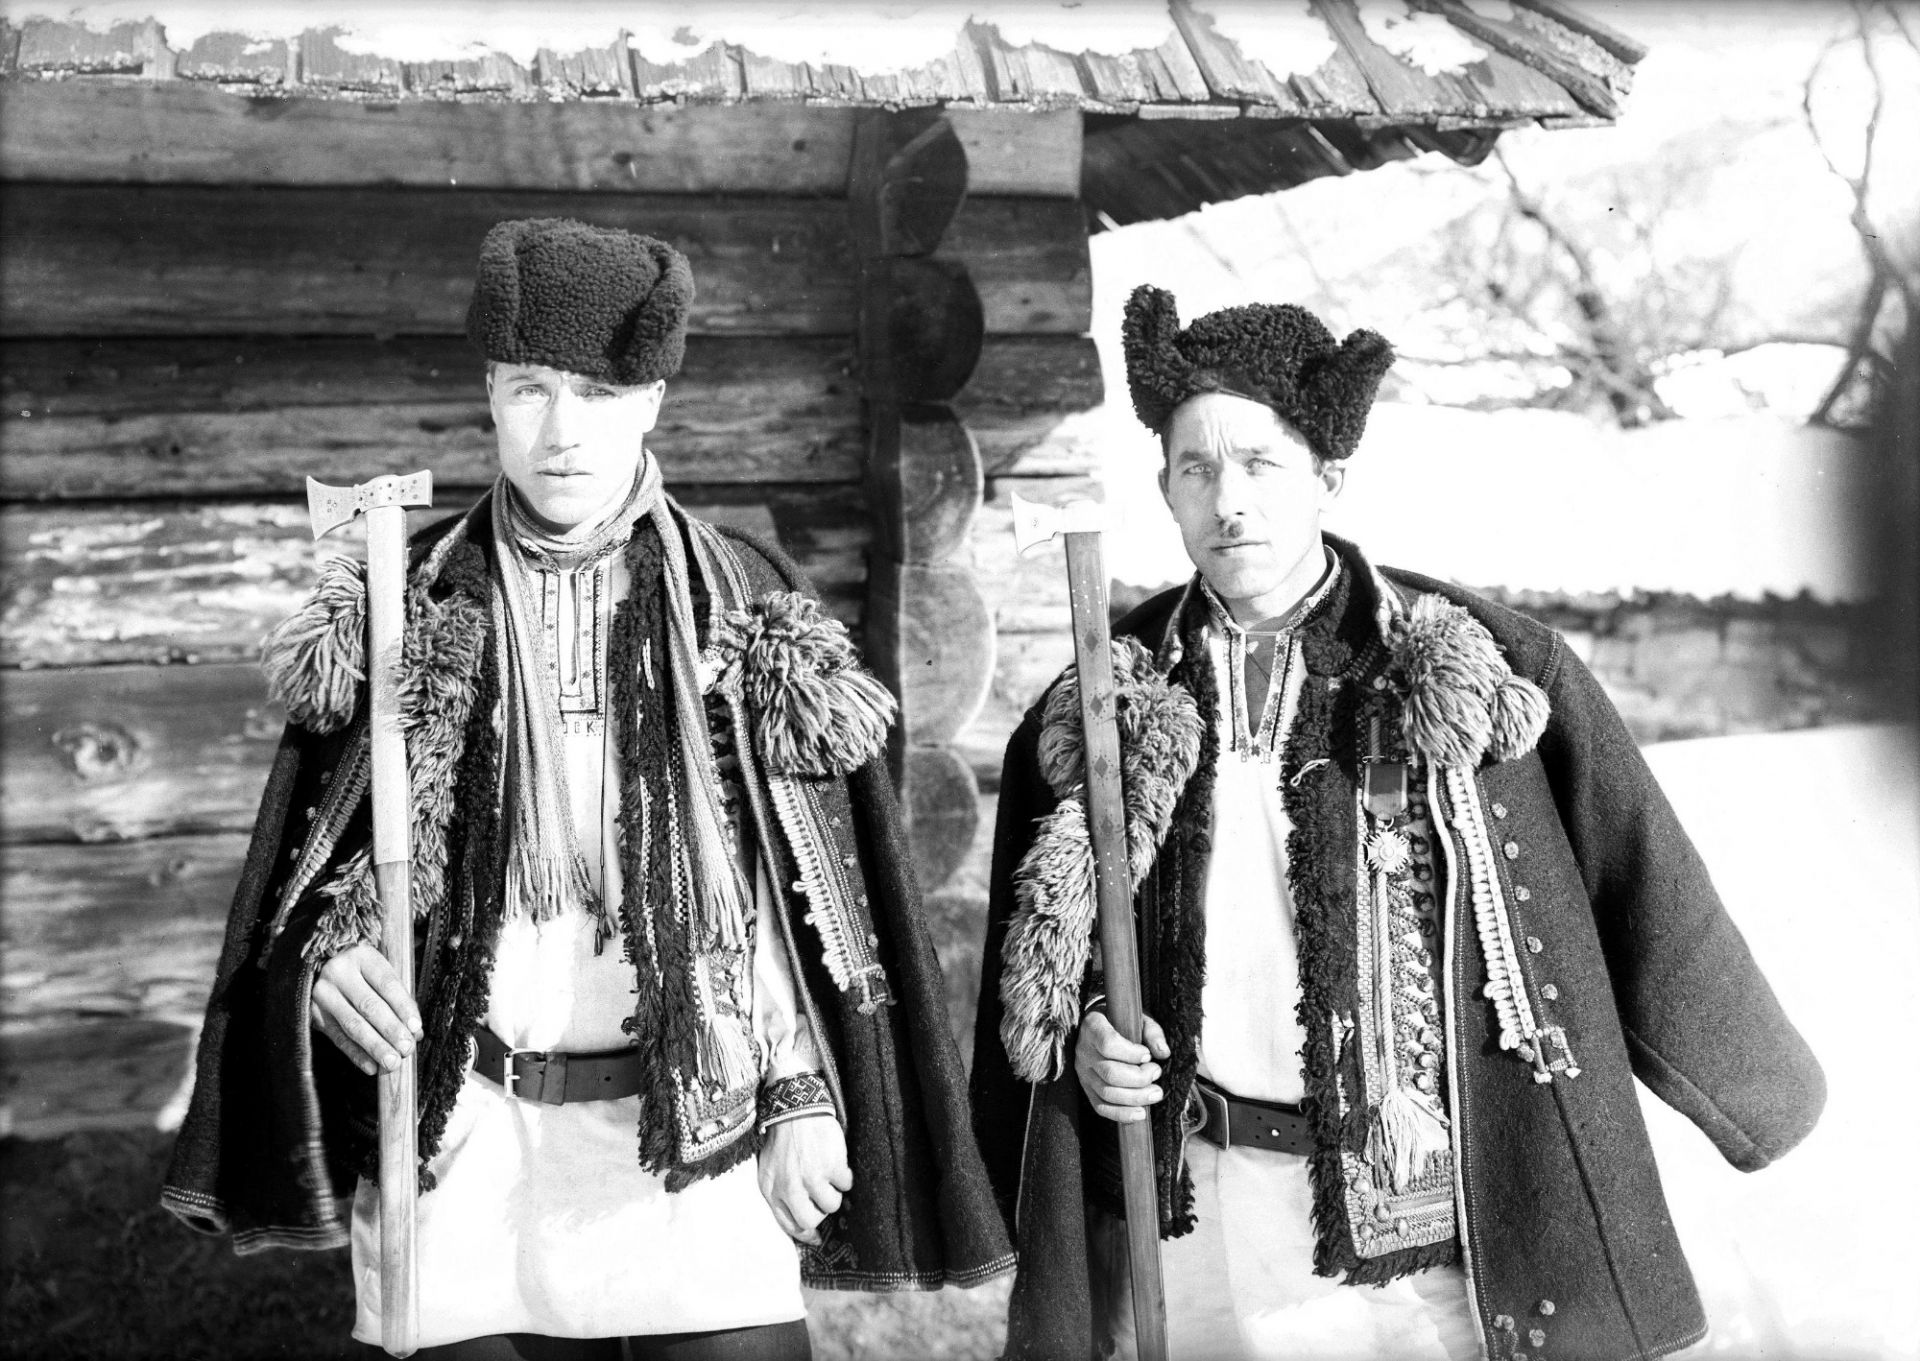 Гуцули з бартками у селі Жаб’є (сьогодні селище Верховина) на Івано-Франківщині, 1935 р. Генрик Поддембський, фот. NAC